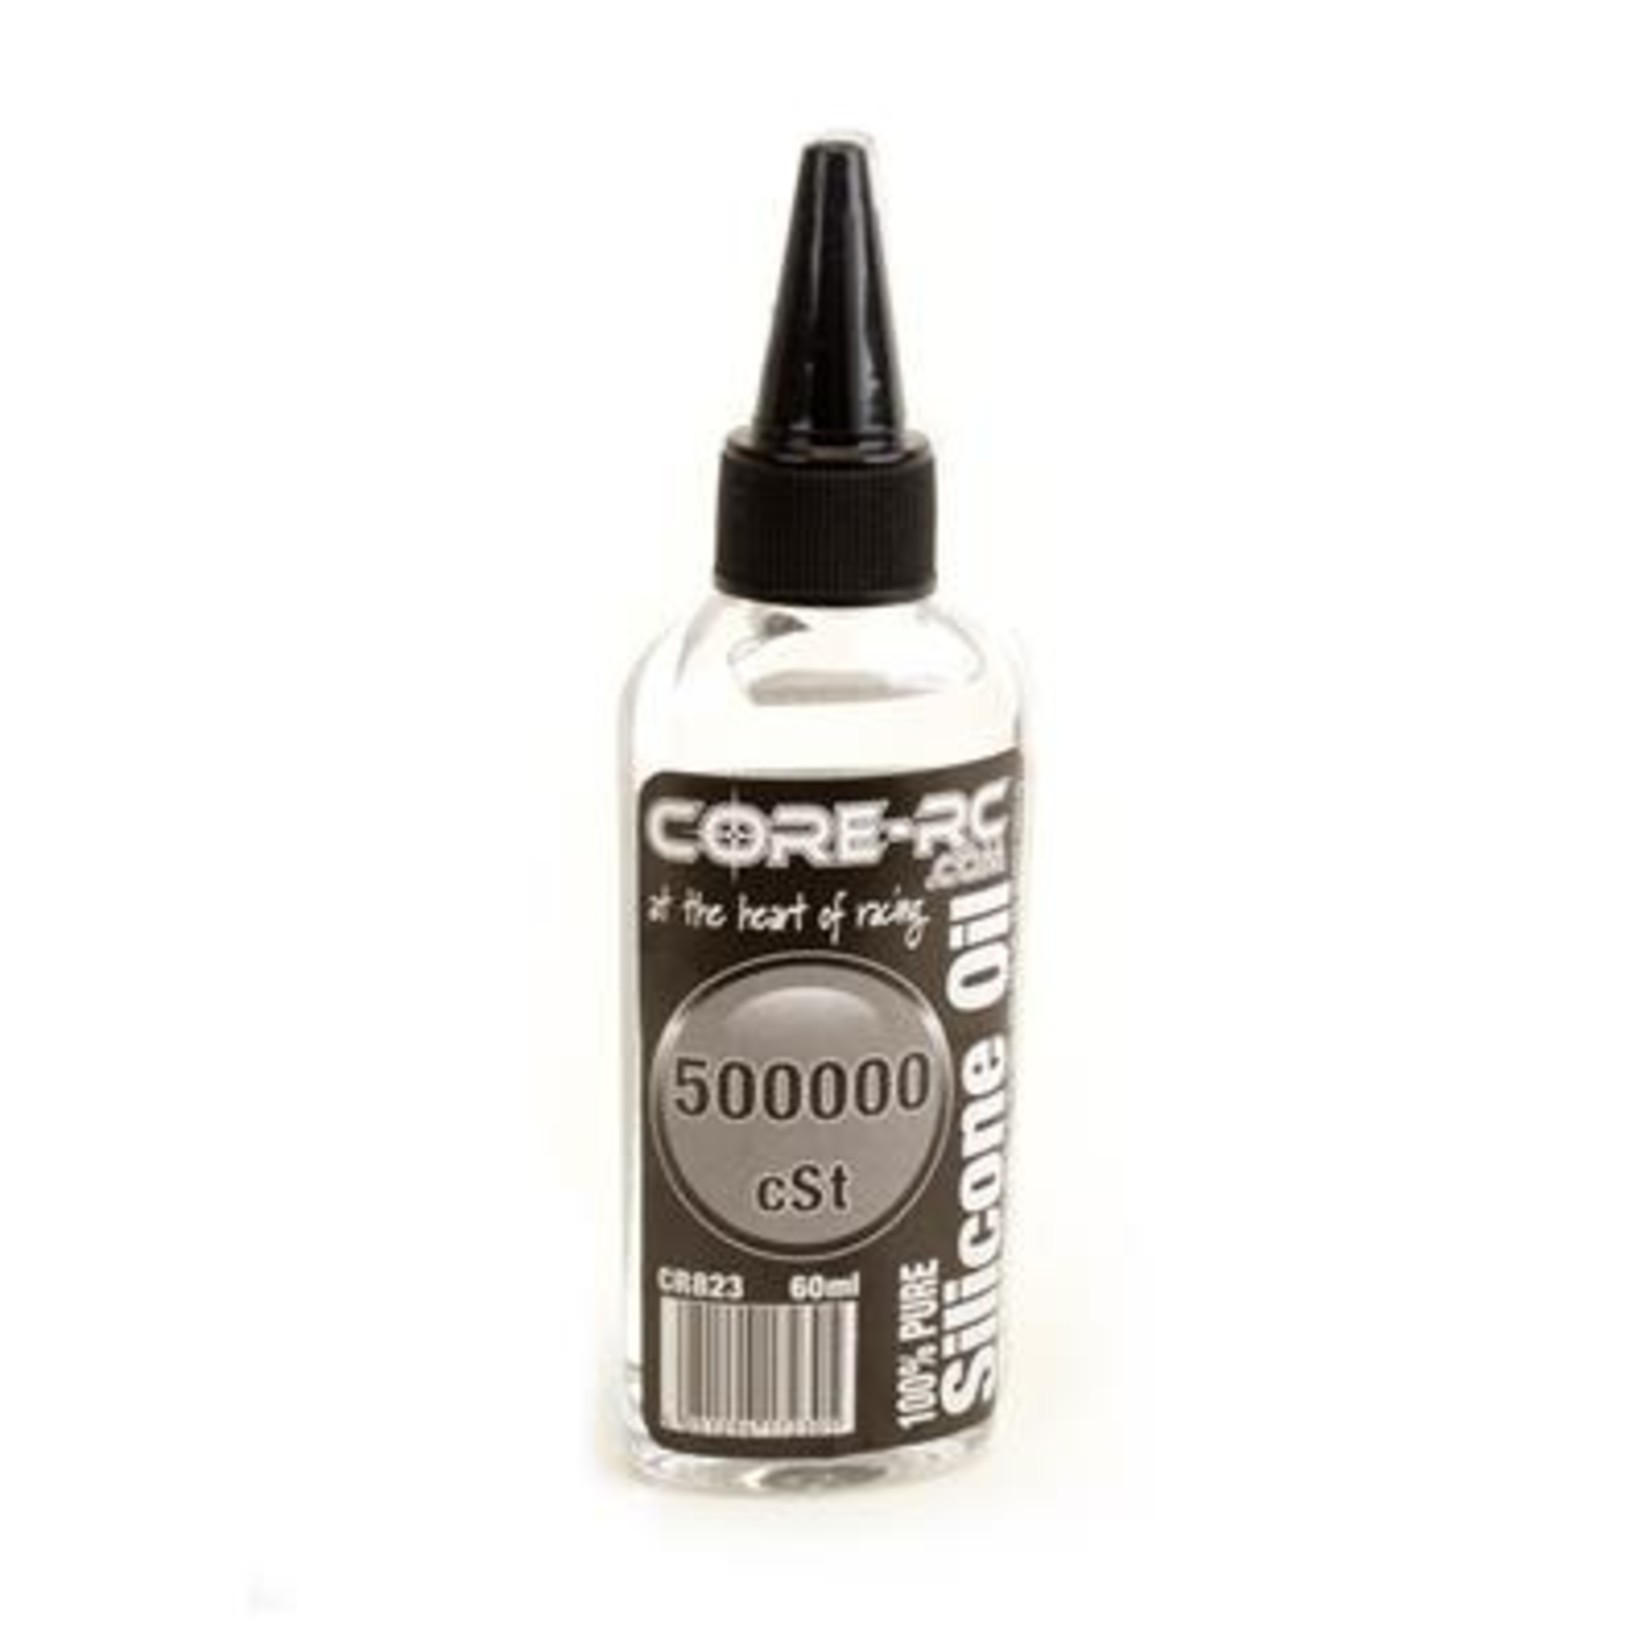 Core RC CORE RC CR823 Silicone Oil - 500000cSt - 60ml